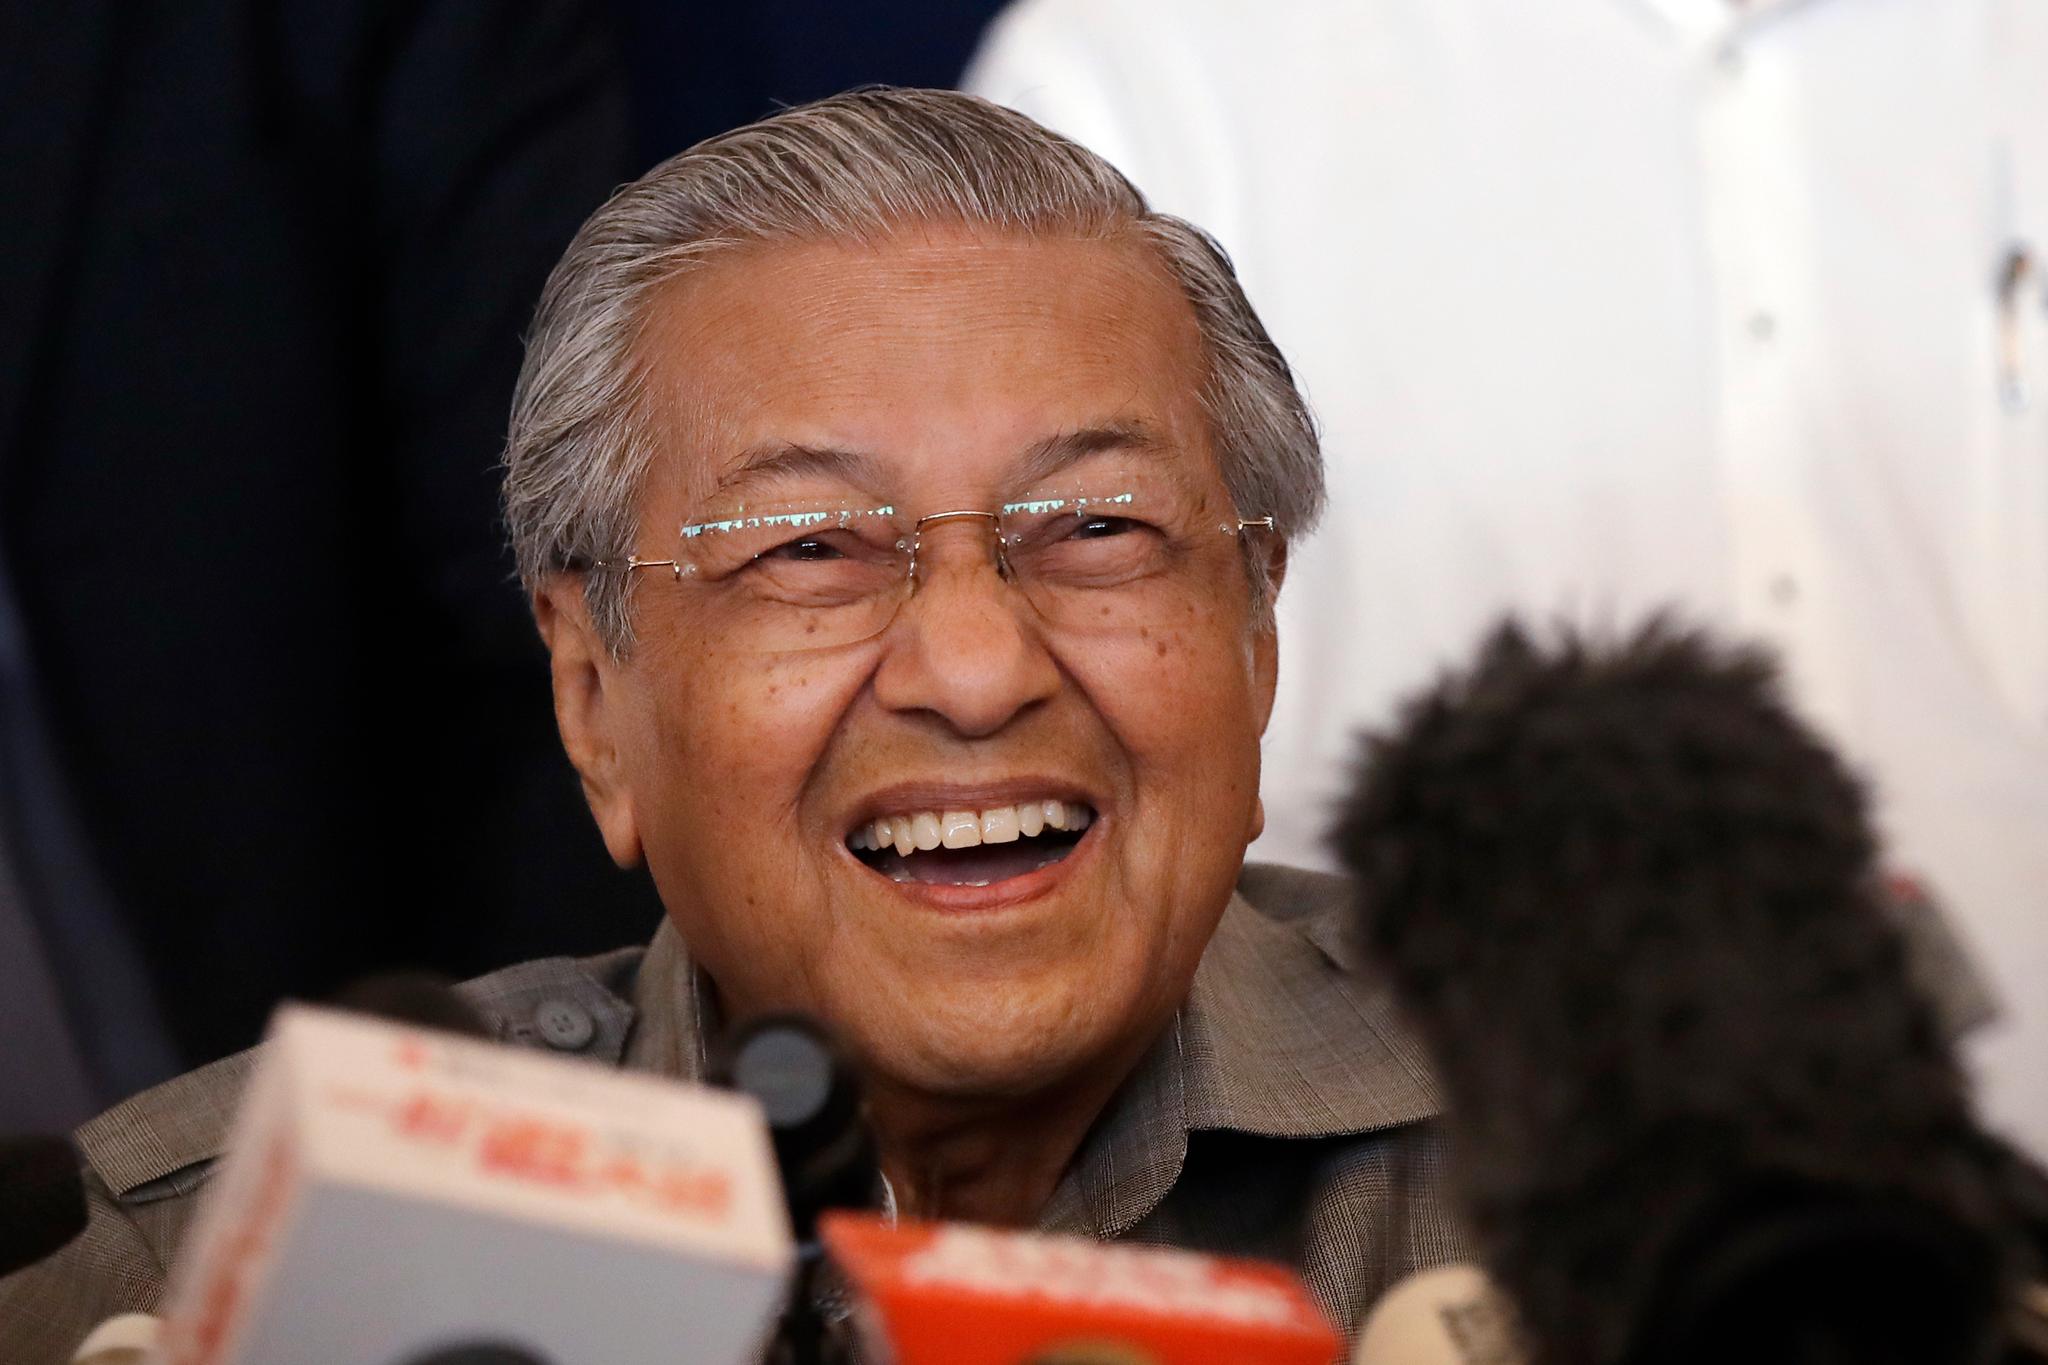  Mahathir Mohamad gleder seg over seieren som igjen gjør ham til Malaysias leder i en alder av 92 år. 